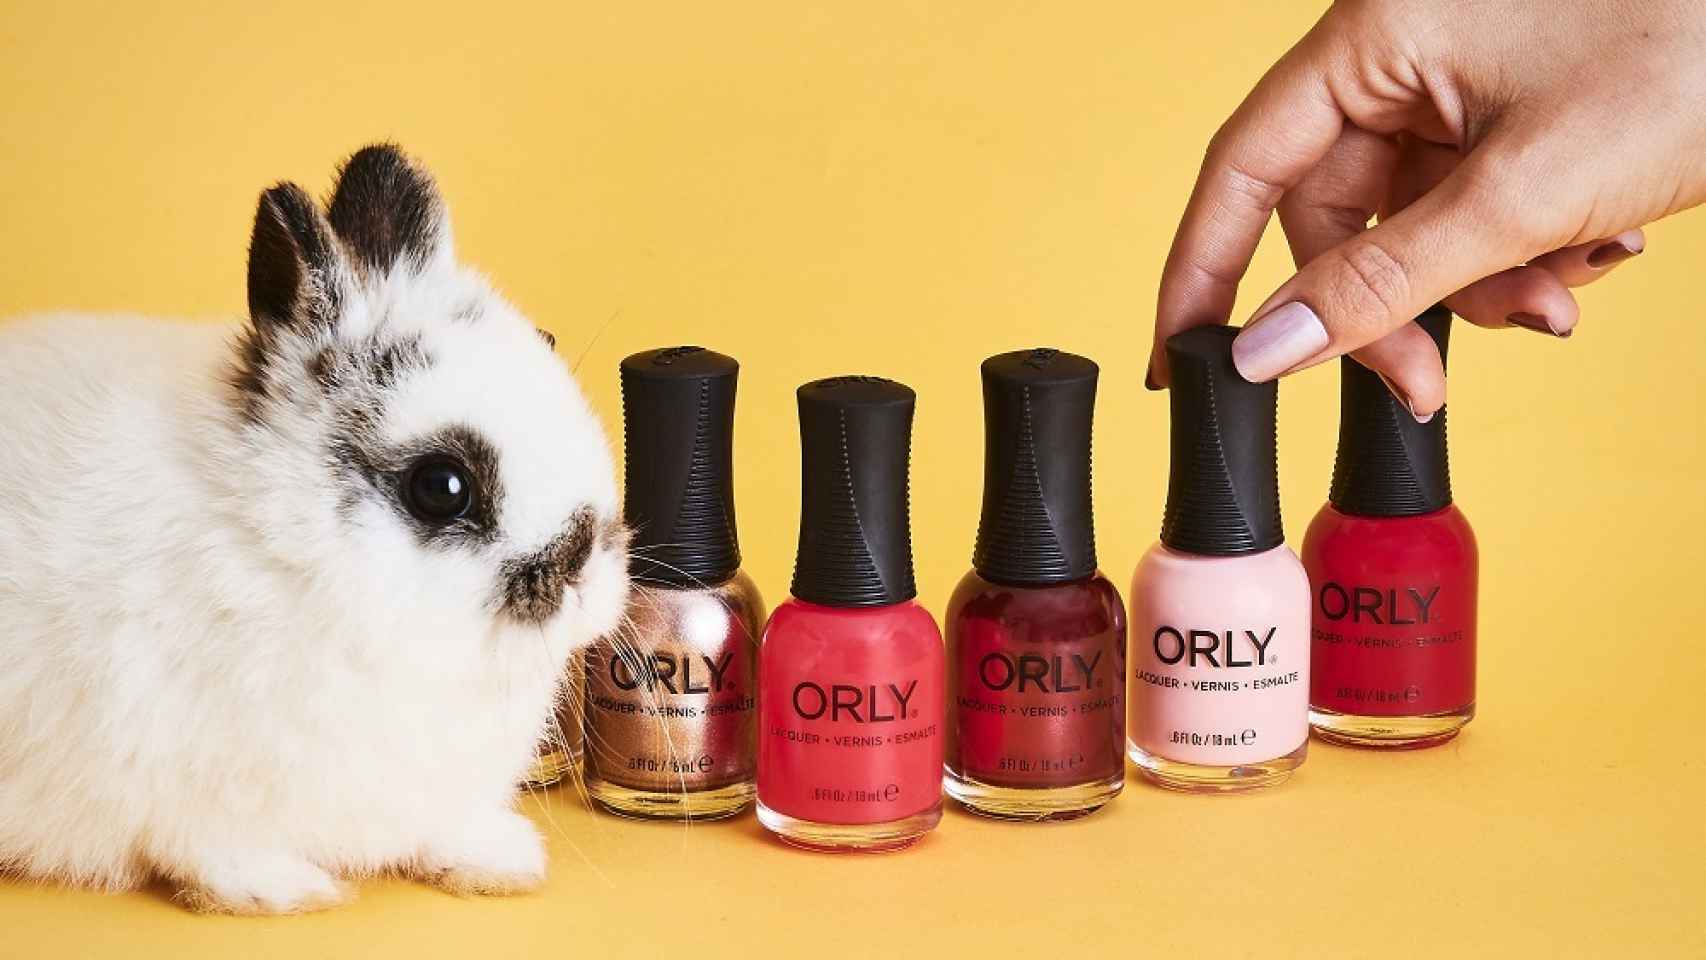 Orly es una marca de cosmética vegana y 'currently free'.